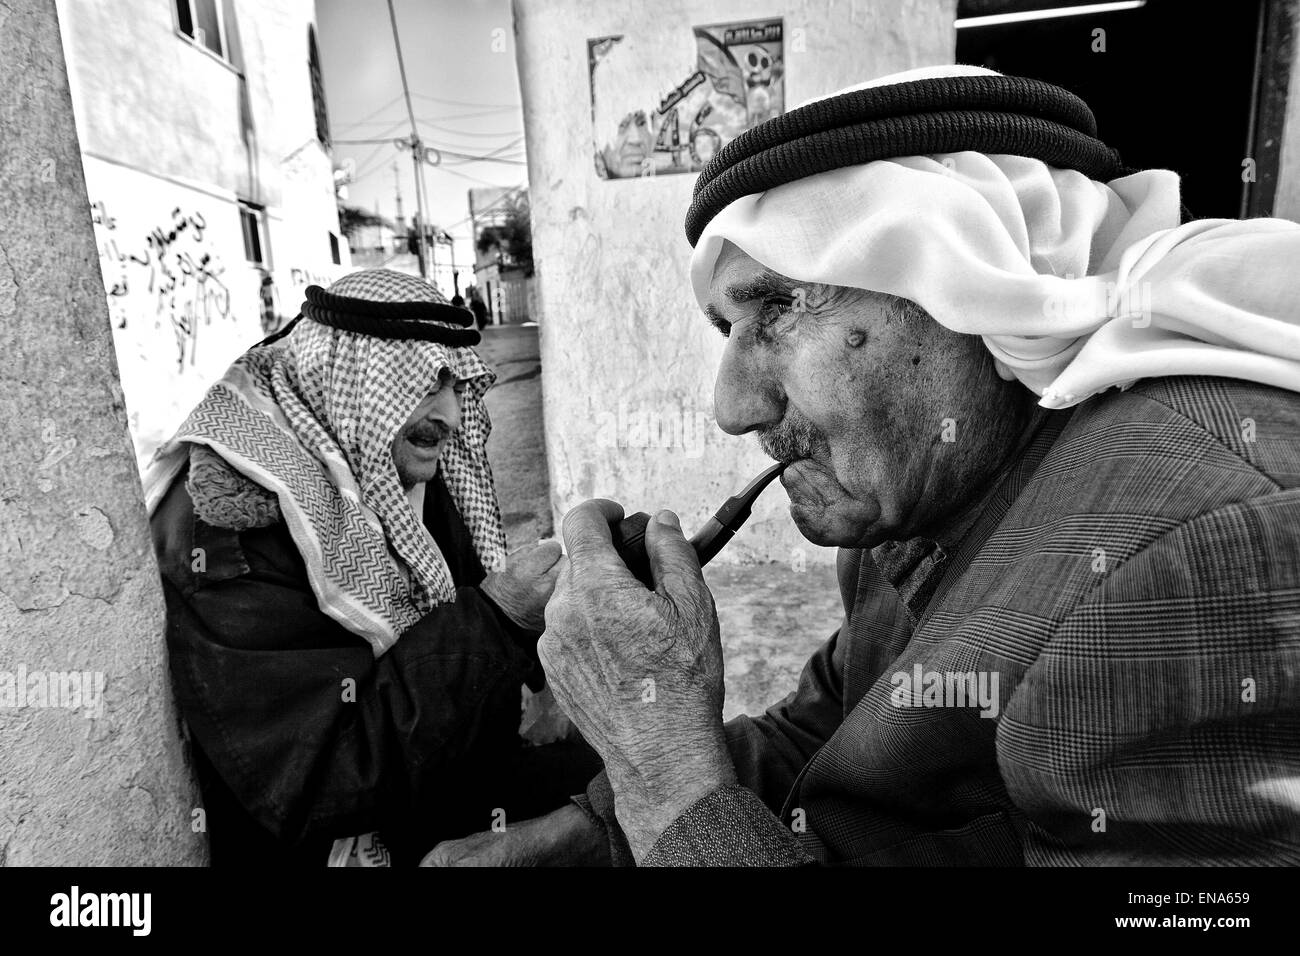 La Palestine. Mar 31, 2011. Les hommes fument une combinaison d'heishei et le tabac dans le camp de réfugiés de Dheisheh. Mar. 31, 2011. Cisjordanie, Palestine. © Gabriel Romero/ZUMA/Alamy Fil Live News Banque D'Images